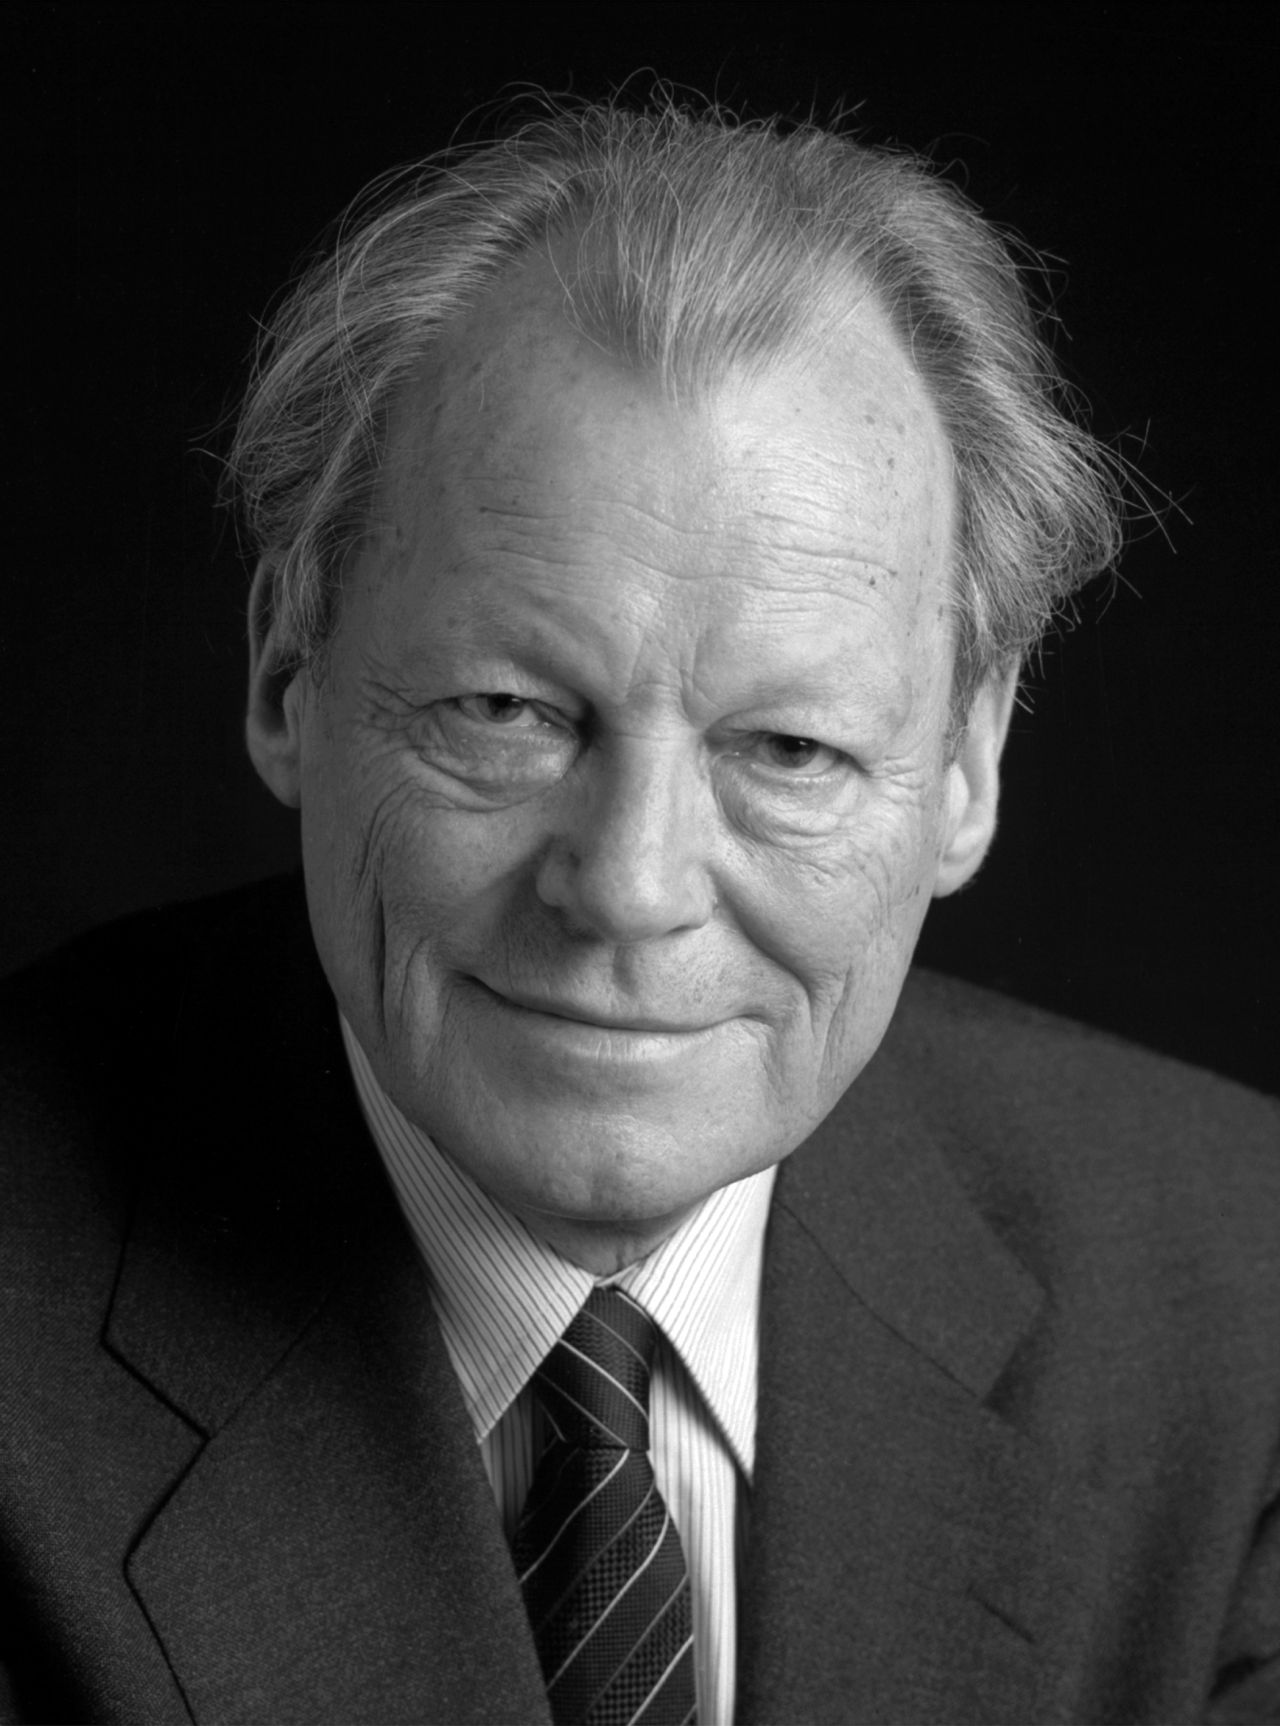 Offizielles Porträt von Willy Brandt, Bundeskanzler der Bundesrepublik Deutschland von 1969-1974